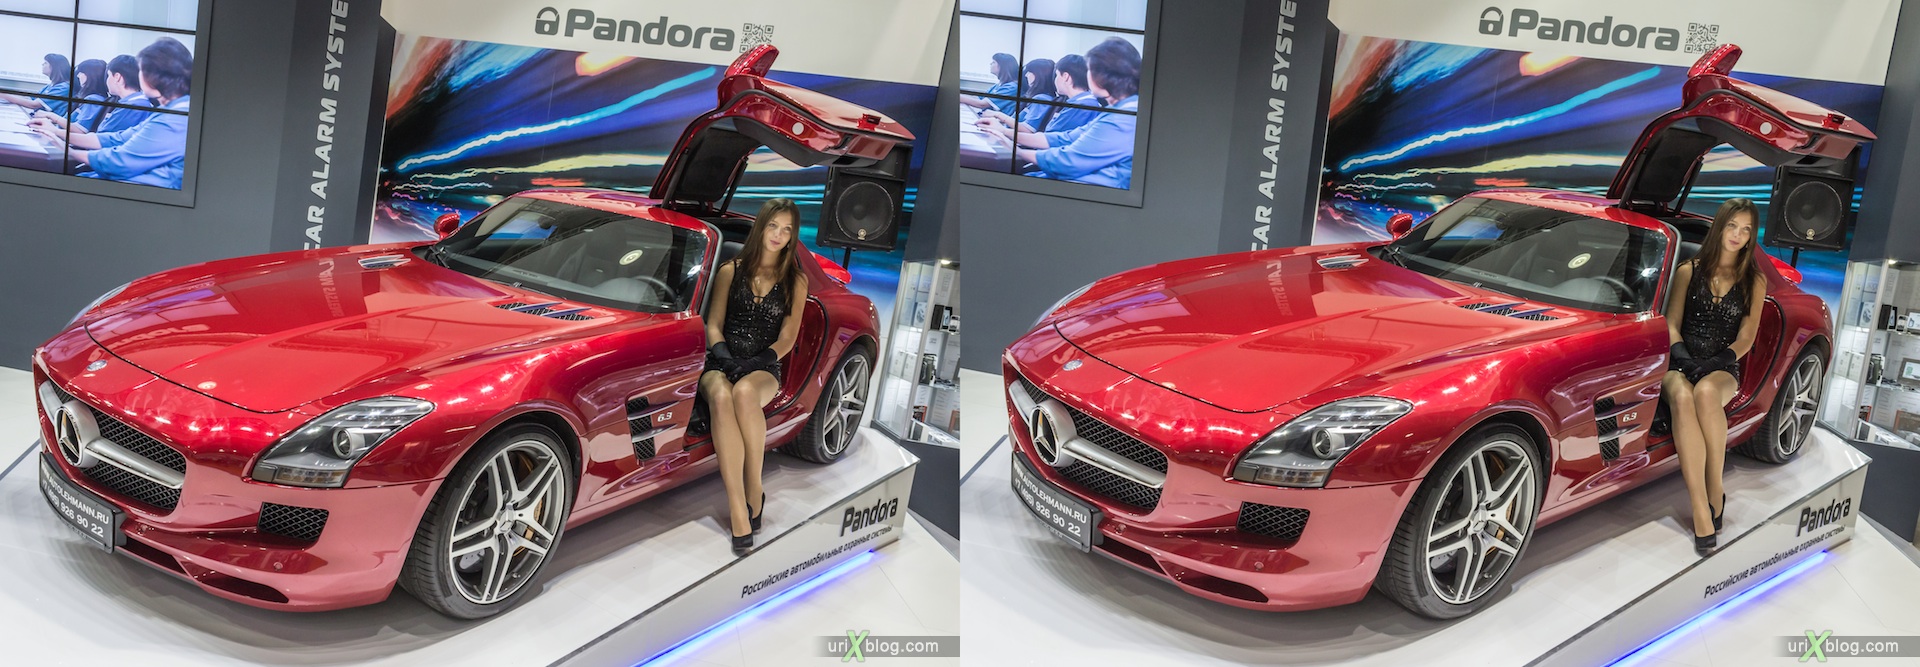 2012, Mercedes Benz, девушка, модель, Московский международный автомобильный салон, ММАС, Крокус Экспо, 3D, стерео, стереопара